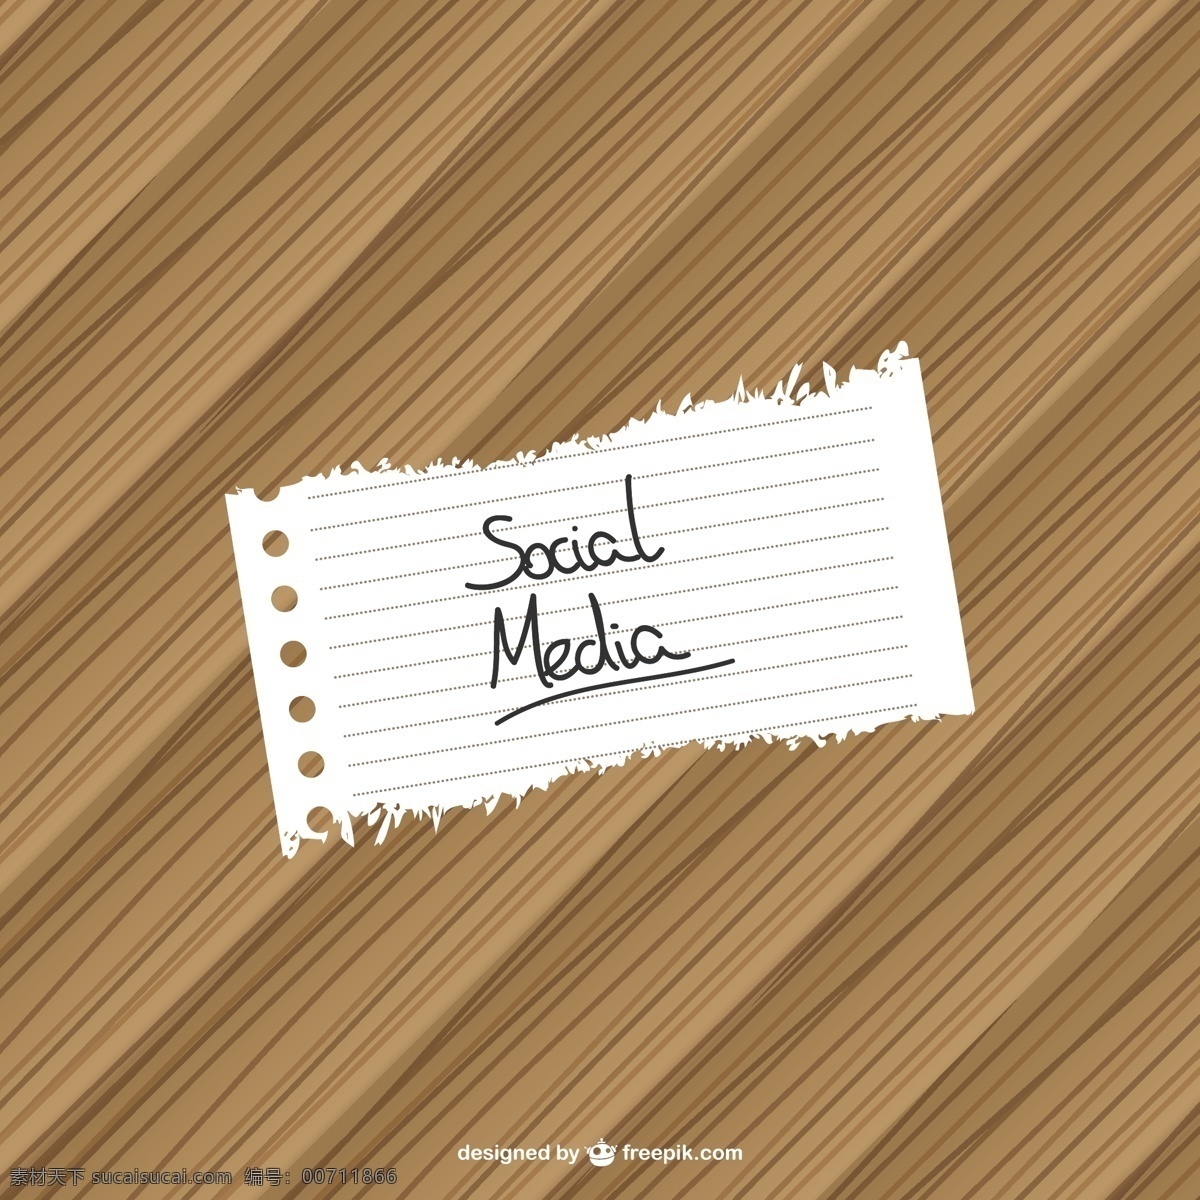 社会 媒体 不是 木 背景 图案 木材 手工 社会媒体 质地 壁纸 板 笔记 木材纹理 木材背景 写作 地板 信息 木板 棕色